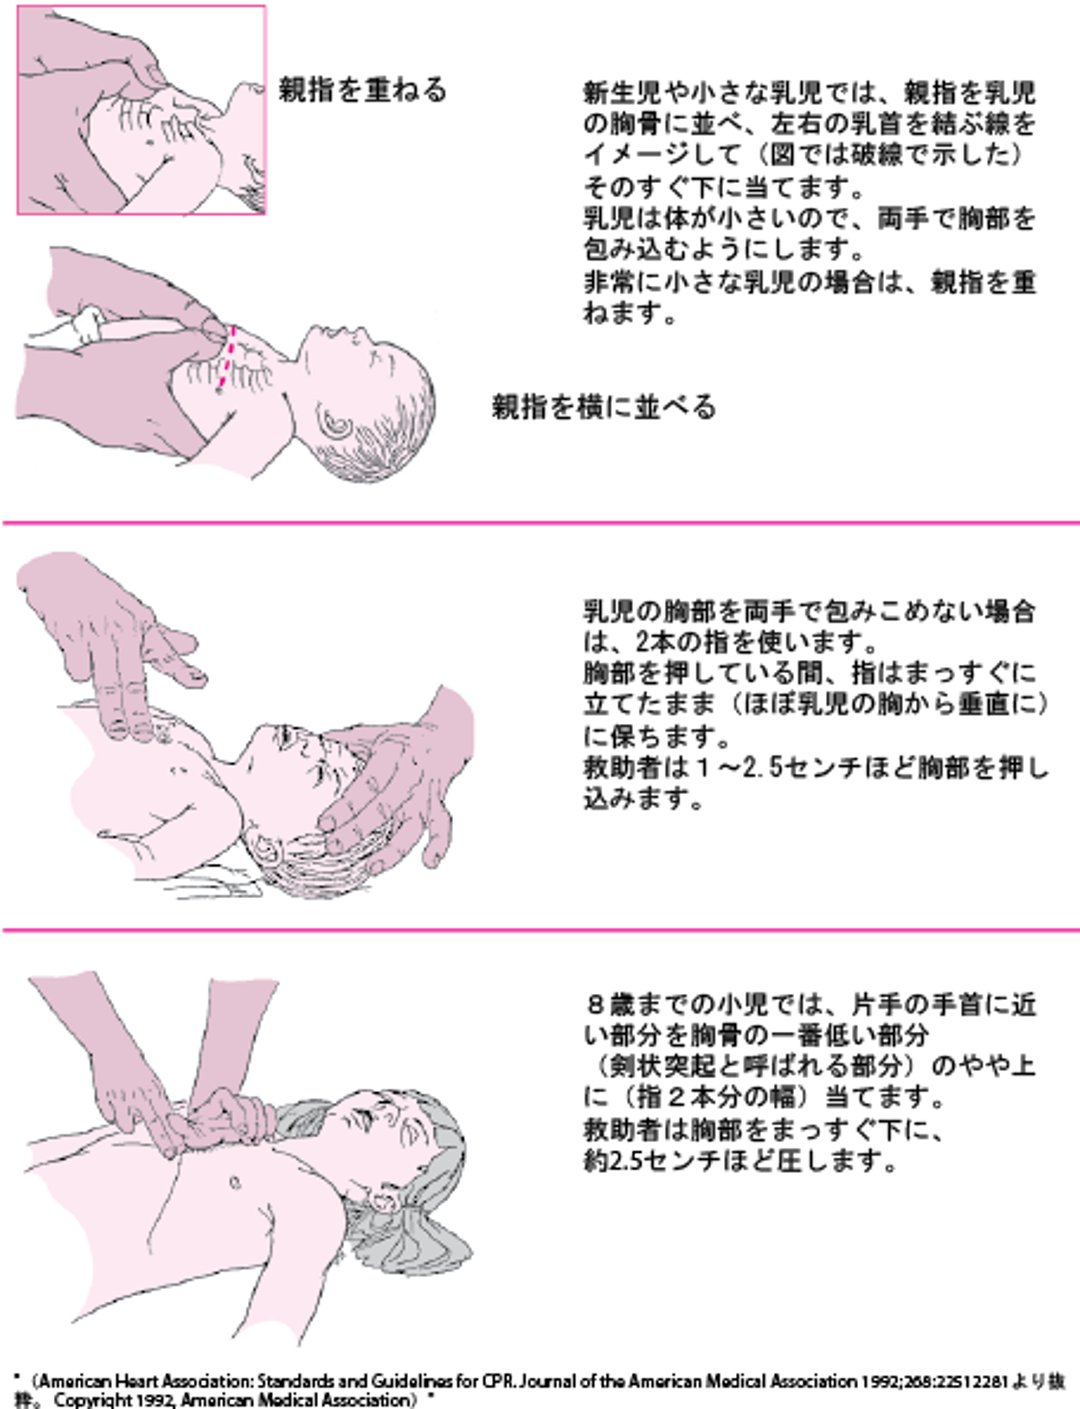 乳児に対する胸骨圧迫